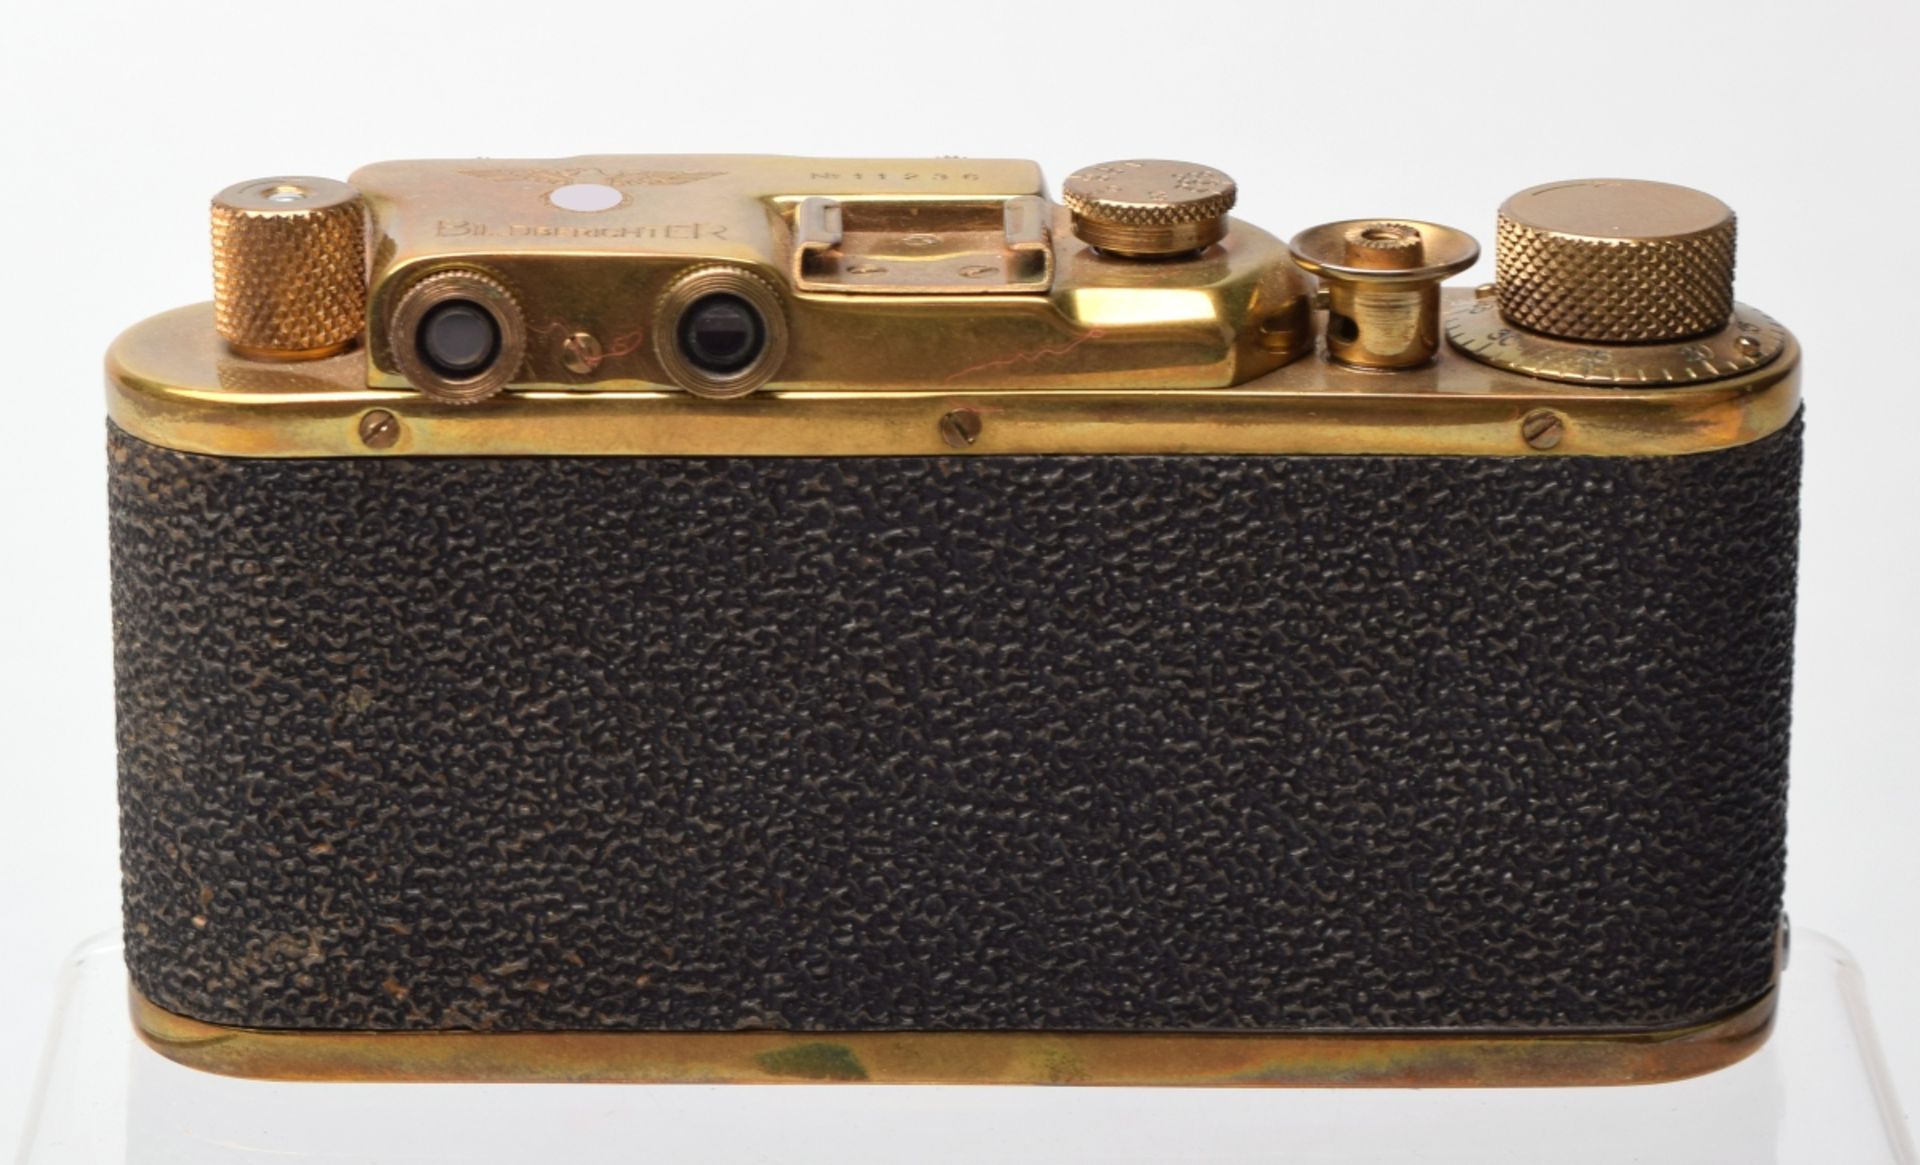 Kamera Hersteller: Leica, Modell: II Gold (wohl russische Kopie), vermessingt, Nr. 11236, auf Obers - Bild 3 aus 5